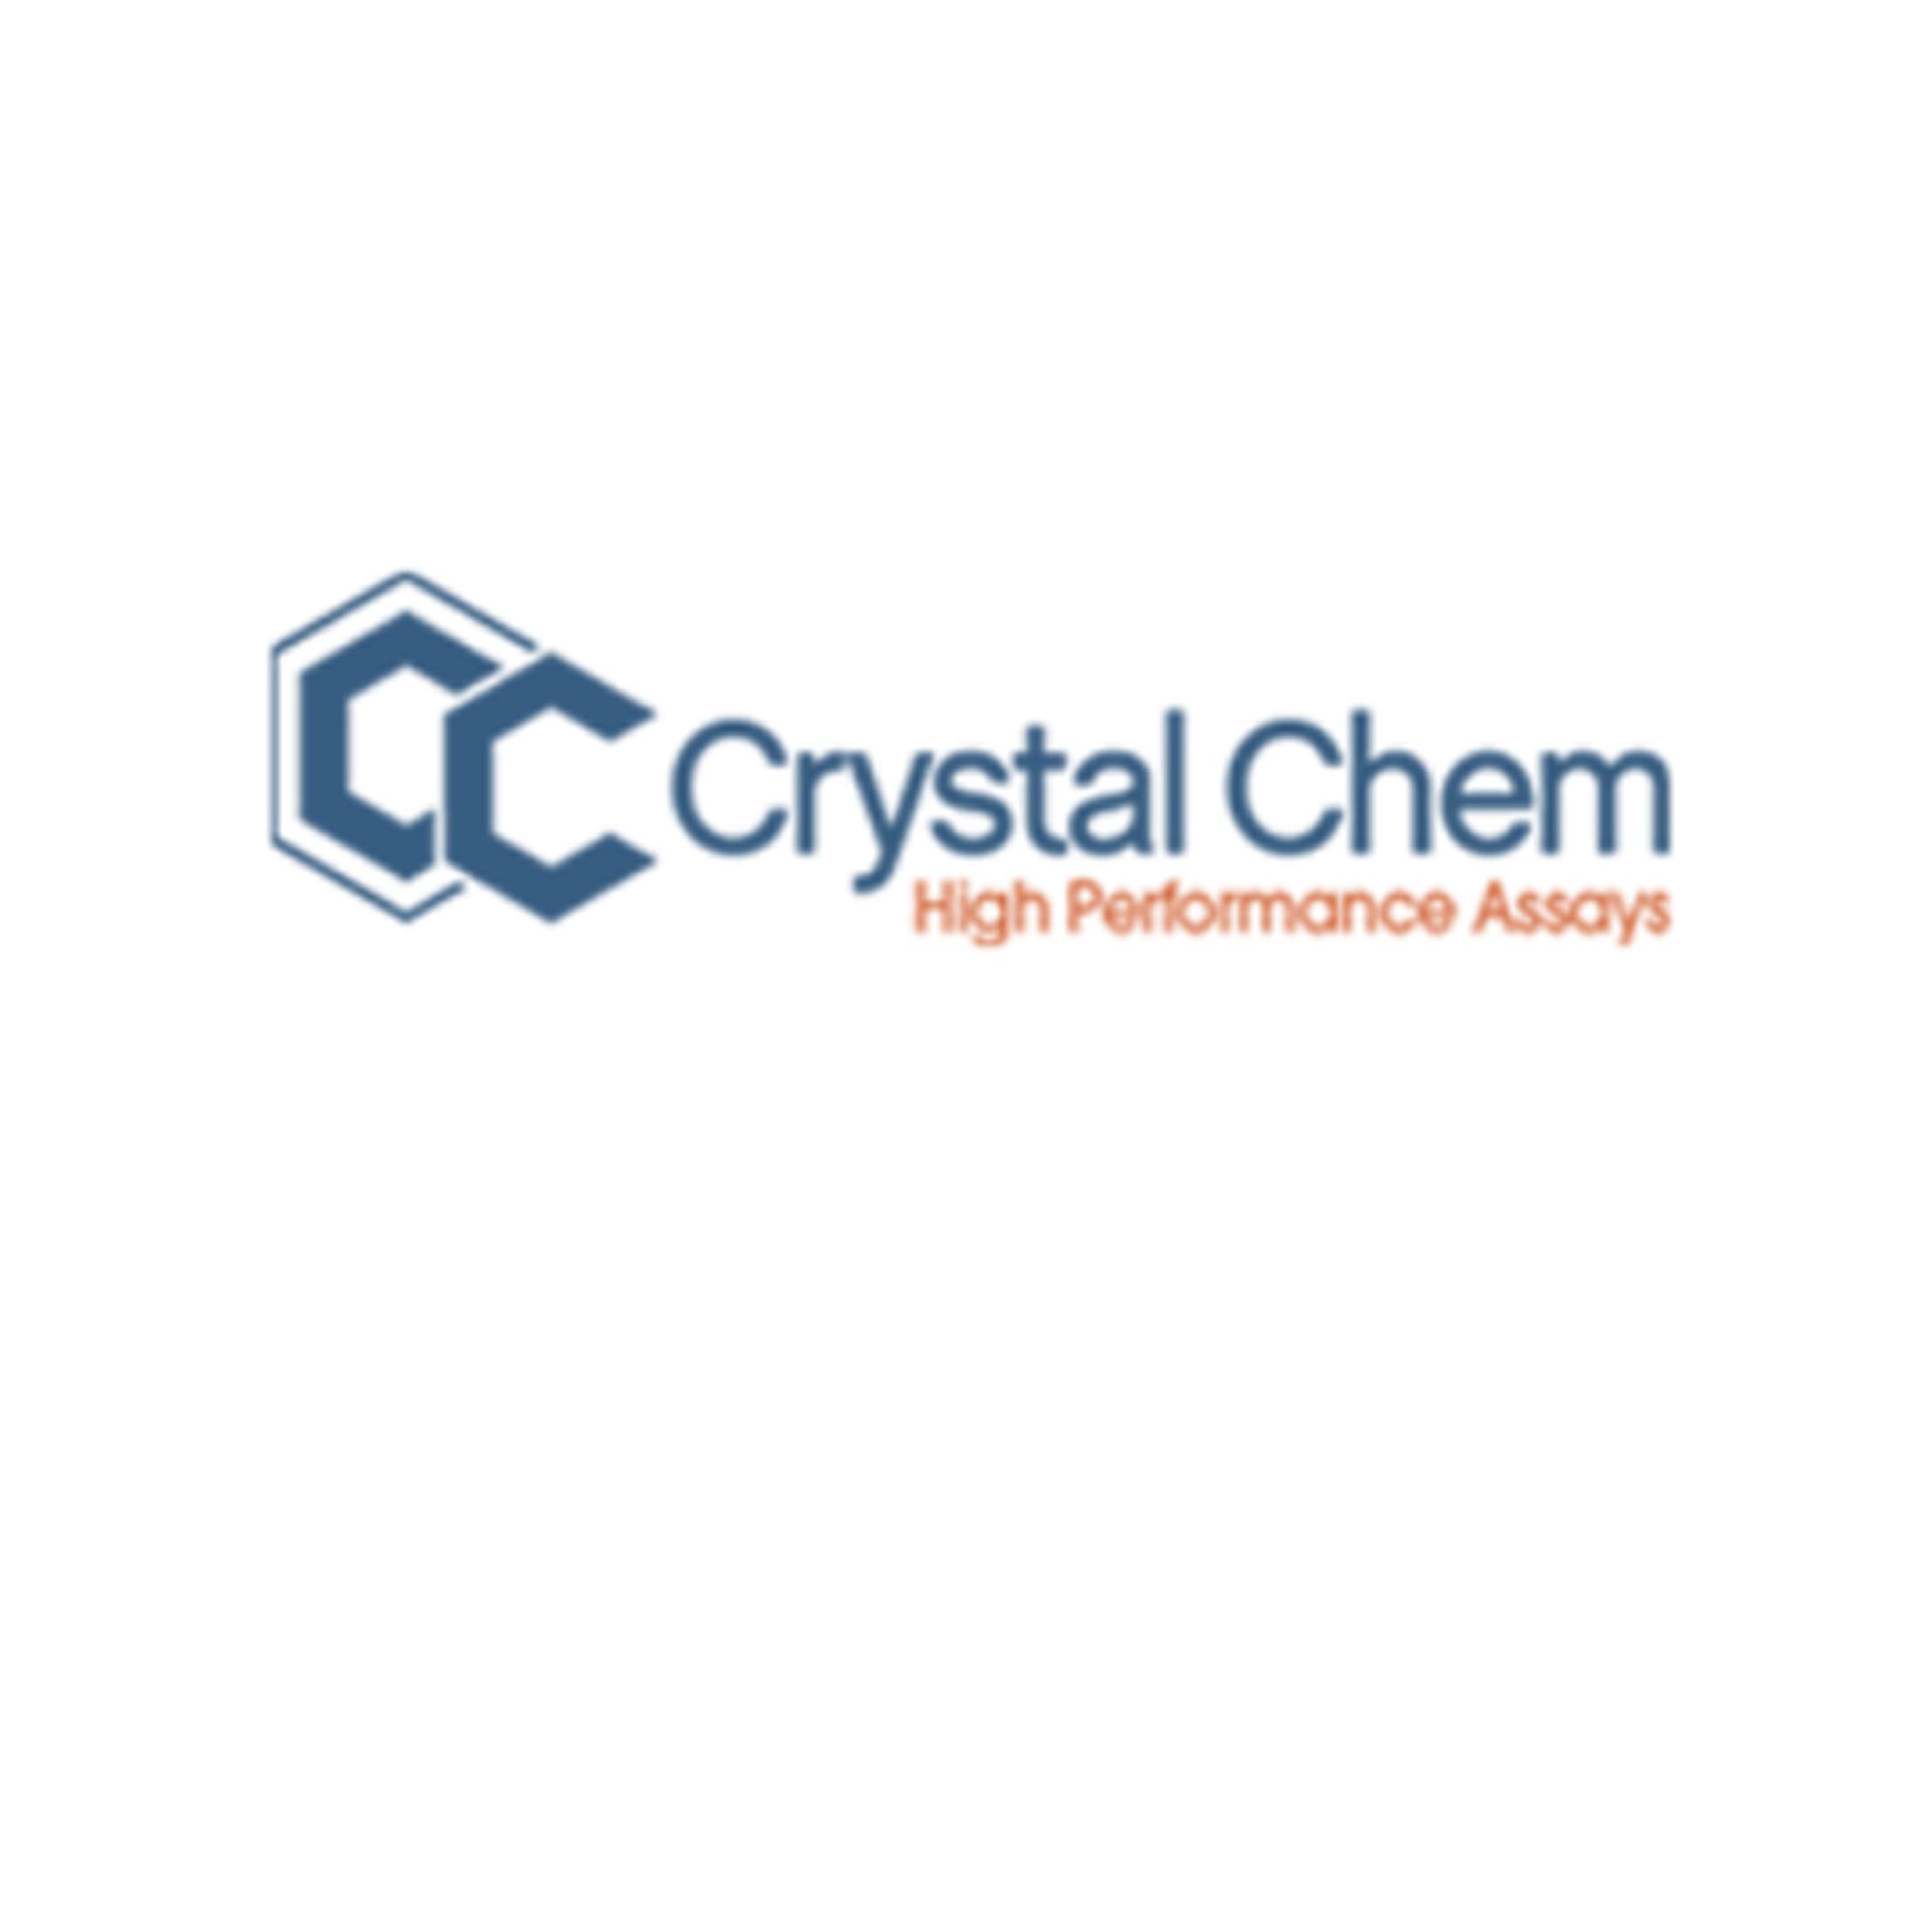 Crystal Chem80229 5'-核苷酸酶检测试剂盒，5’-Nucleotidase Assay Kit